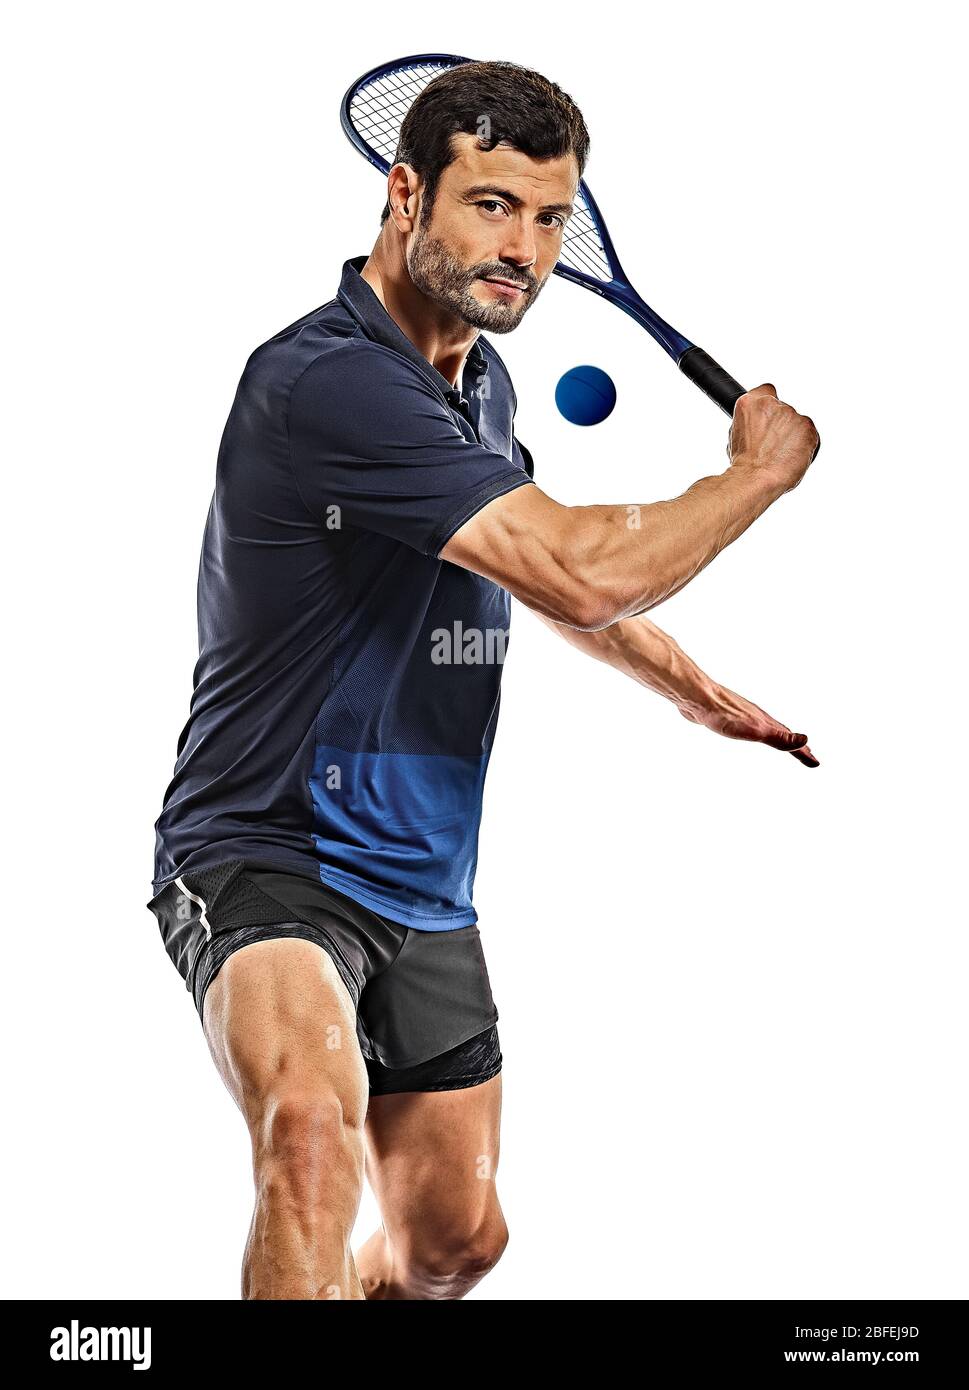 un homme d'âge mûr caucasien pratiquant le squash en studio isolé sur fond blanc Banque D'Images